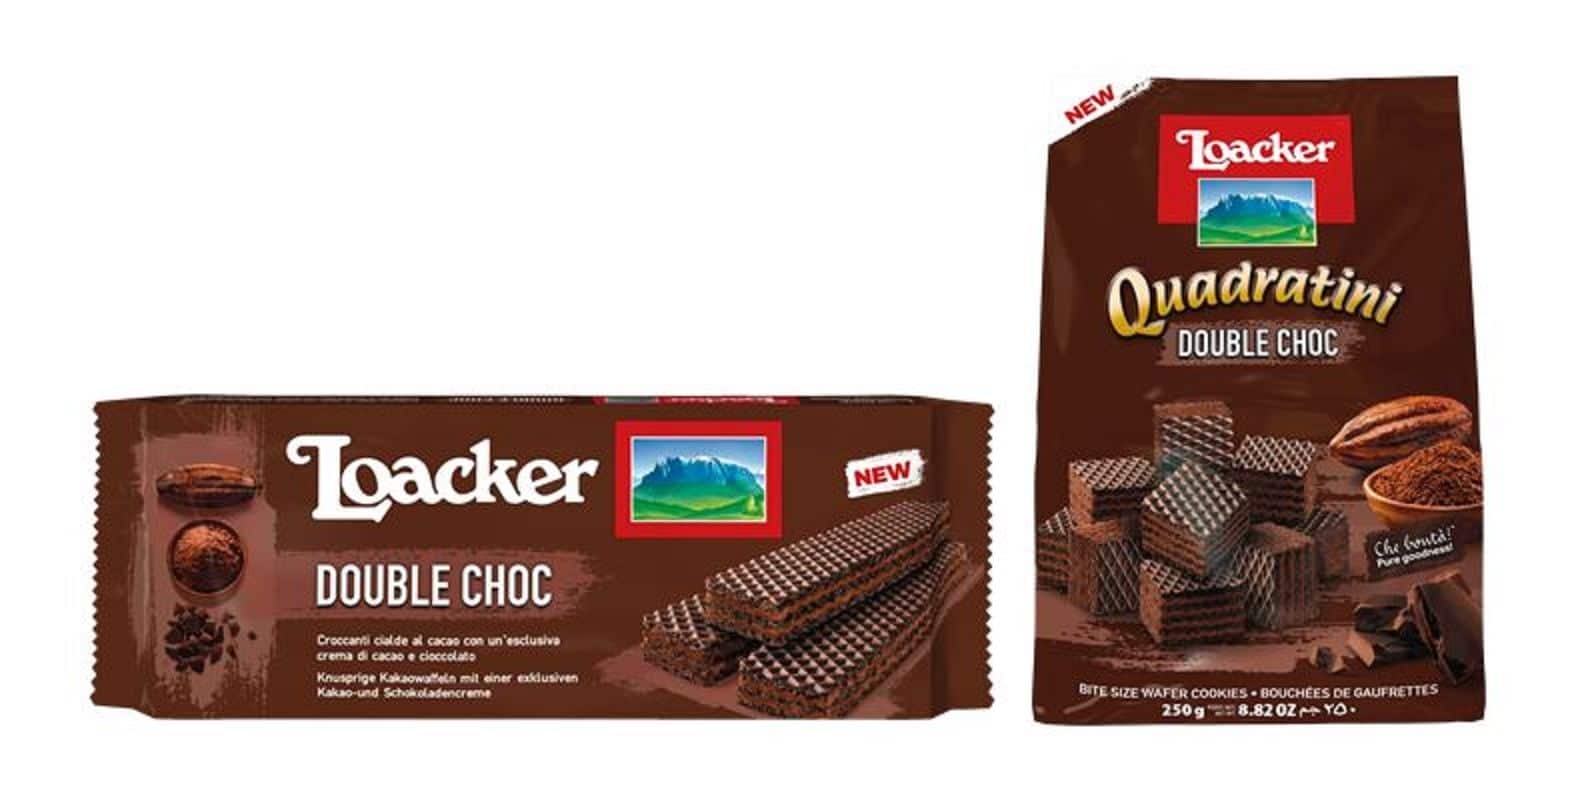 בסדרה החדשה שני מוצרים: לואקר קואדרטיני דאבל שוקולד ולואקר קלאסיק דאבל שוקולד